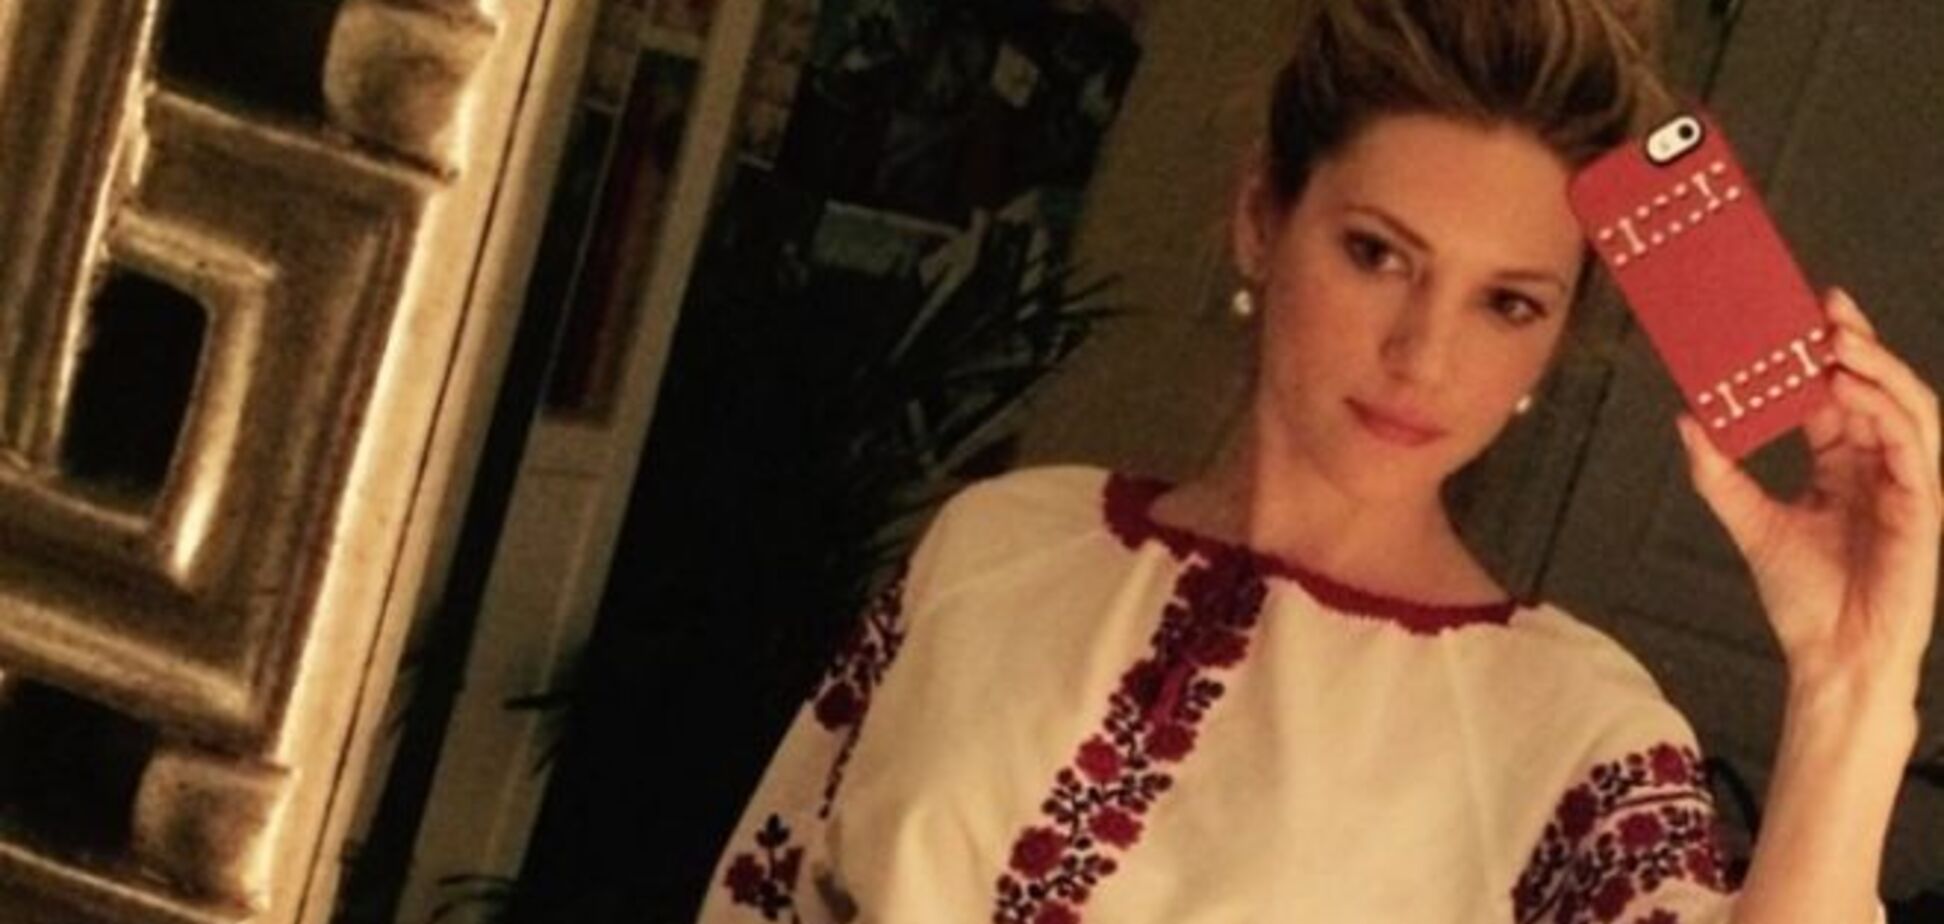 Звезда Голливуда из Канады гордится украинскими корнями: фото актрисы в вышиванке